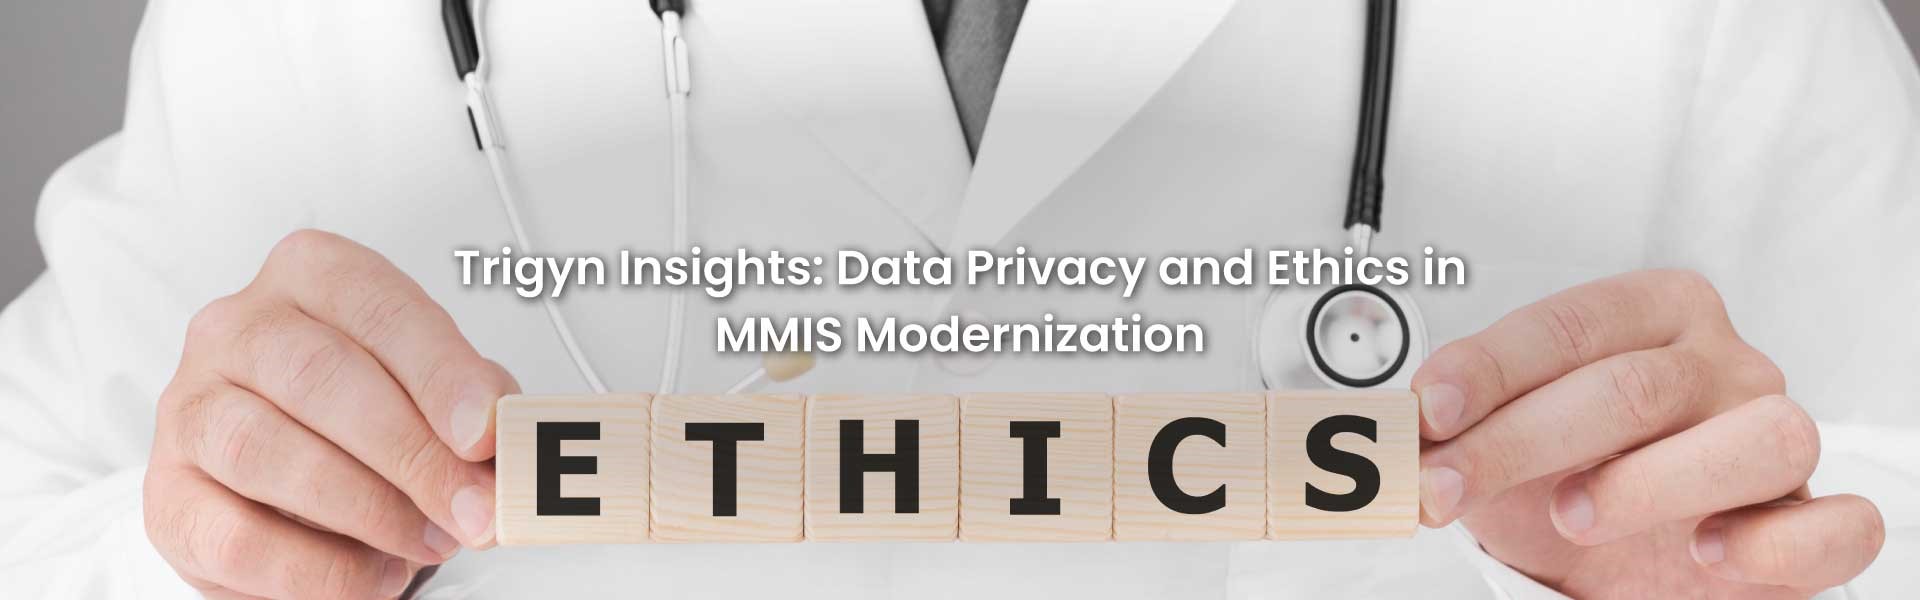 Data Privacy in MMIS Modernization